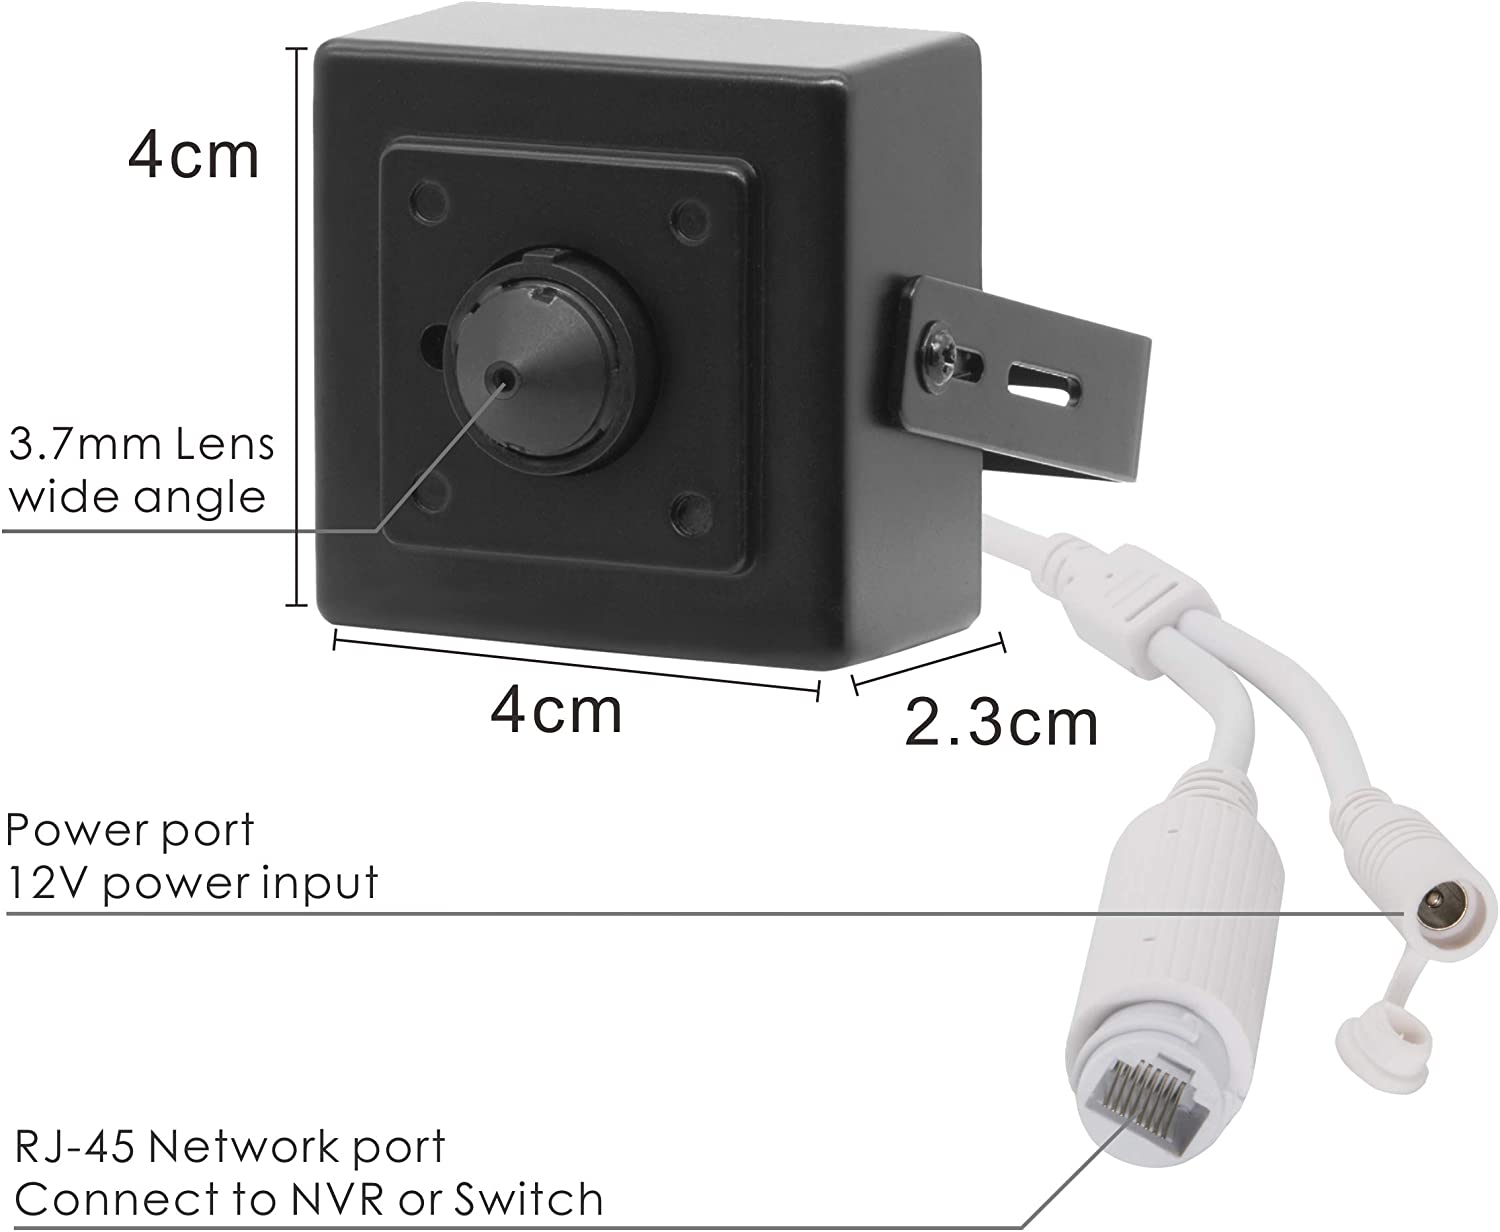 دوربین مداربسته منزل مخفی برای نصب در فضای داخلی و با لنز بسیار کوچک با رنگ سیاه دارای کاربرد جاسوسی است.